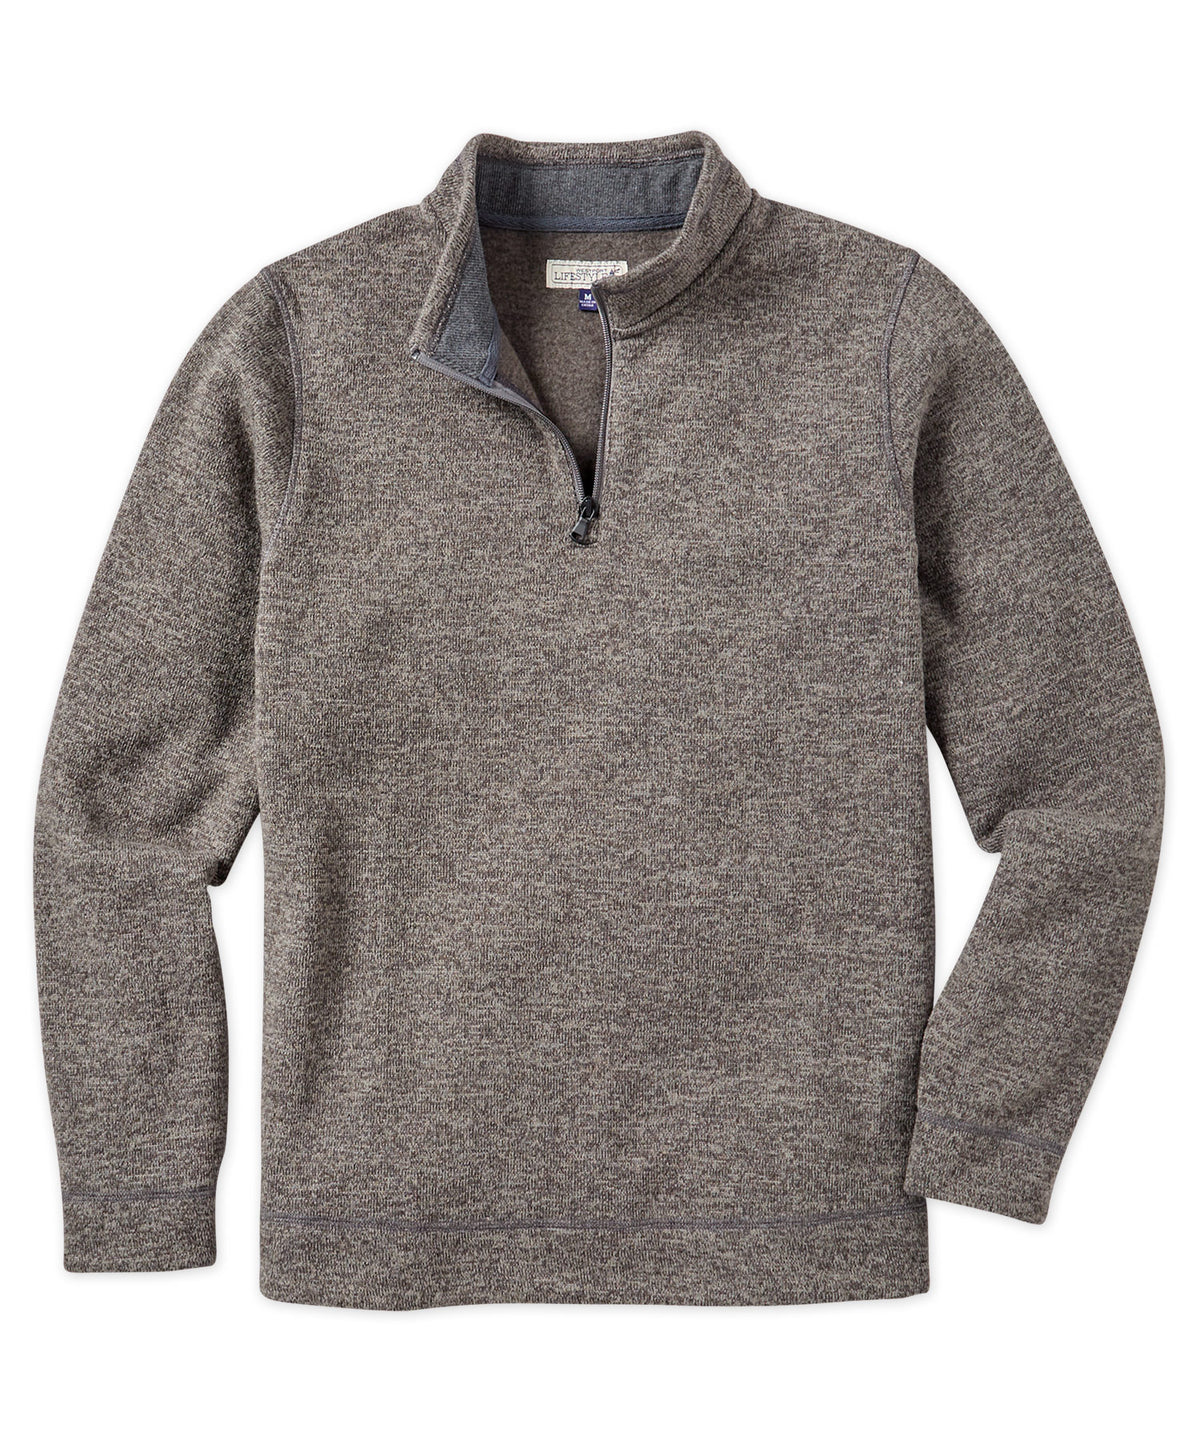 Westport Lifestyle Quarter-Zip Sweater Fleece Pullover